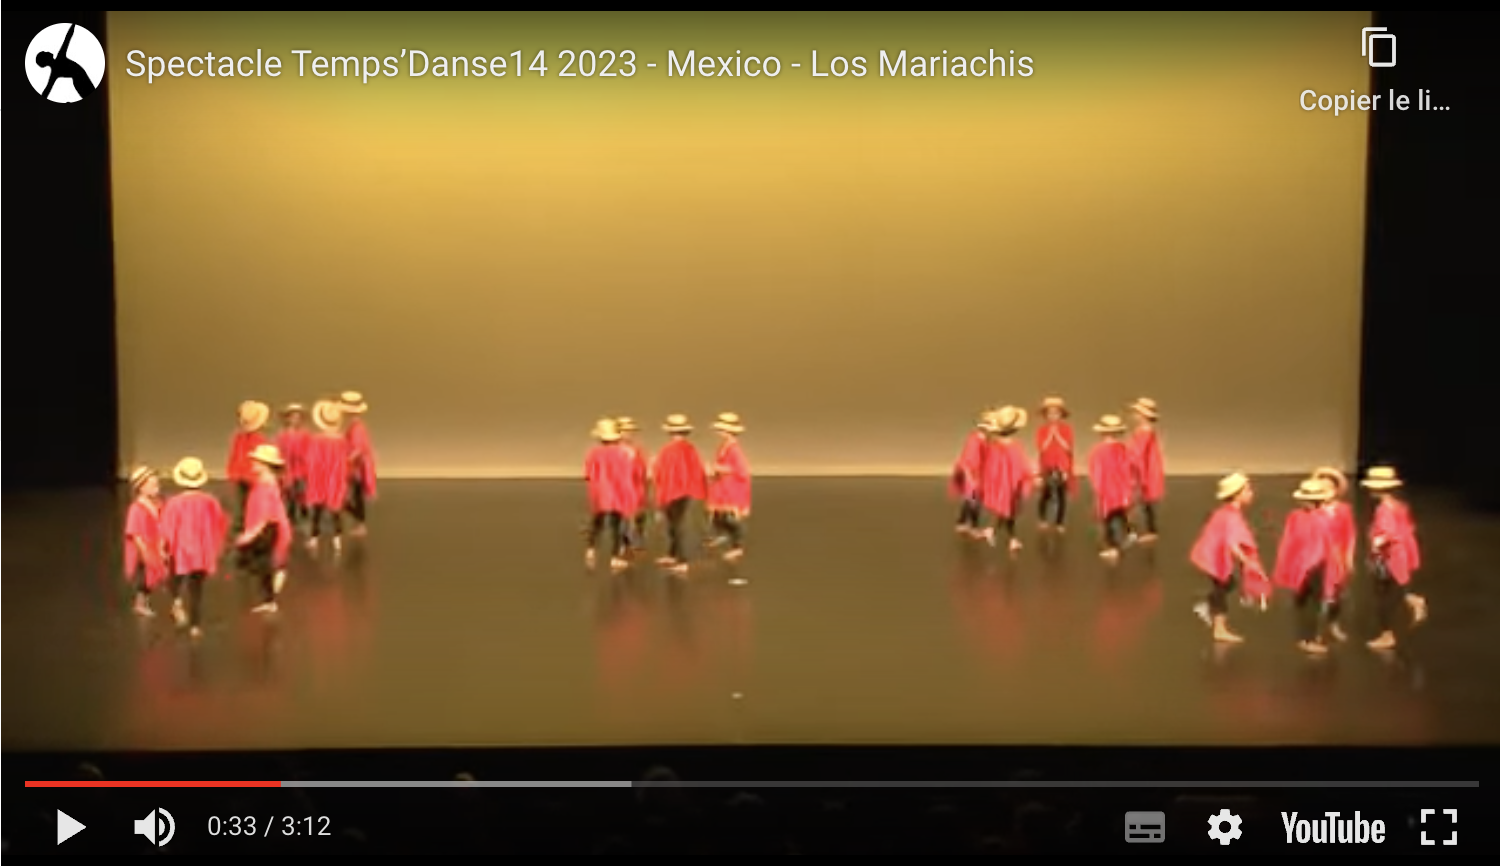 Mexico - Los Mariachis